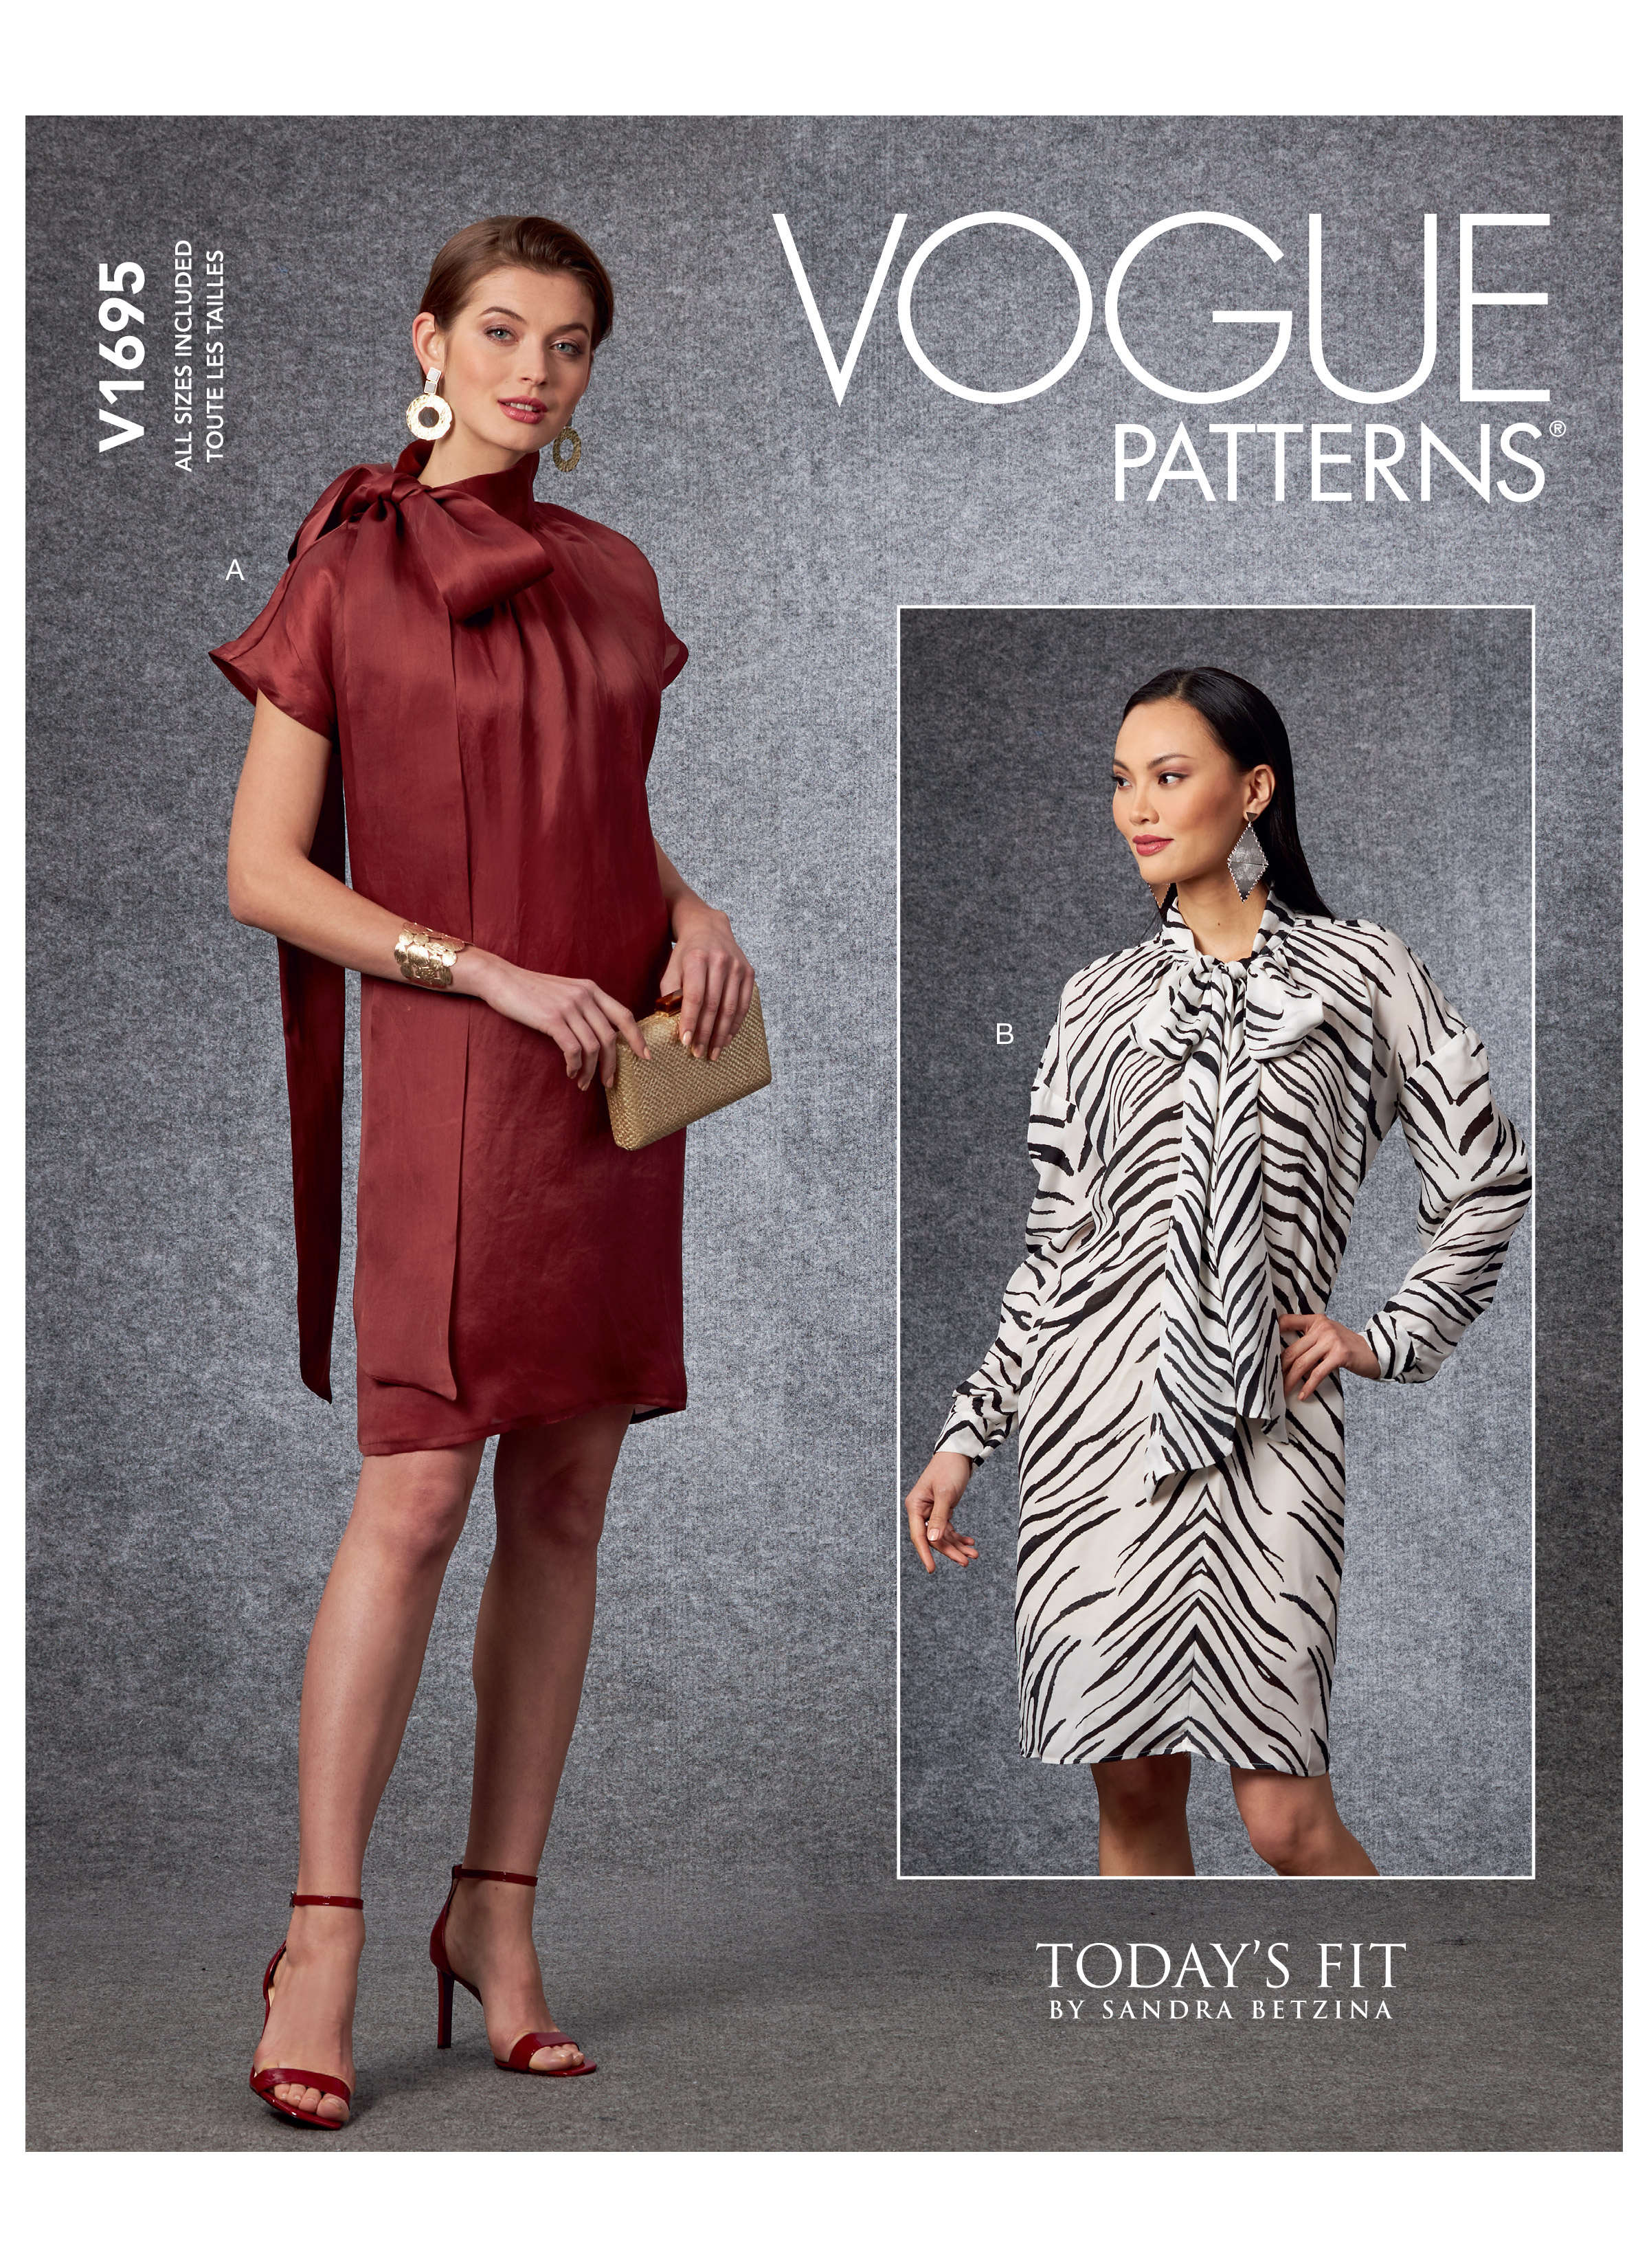 Vogue Patterns 1695 Misses' Dress